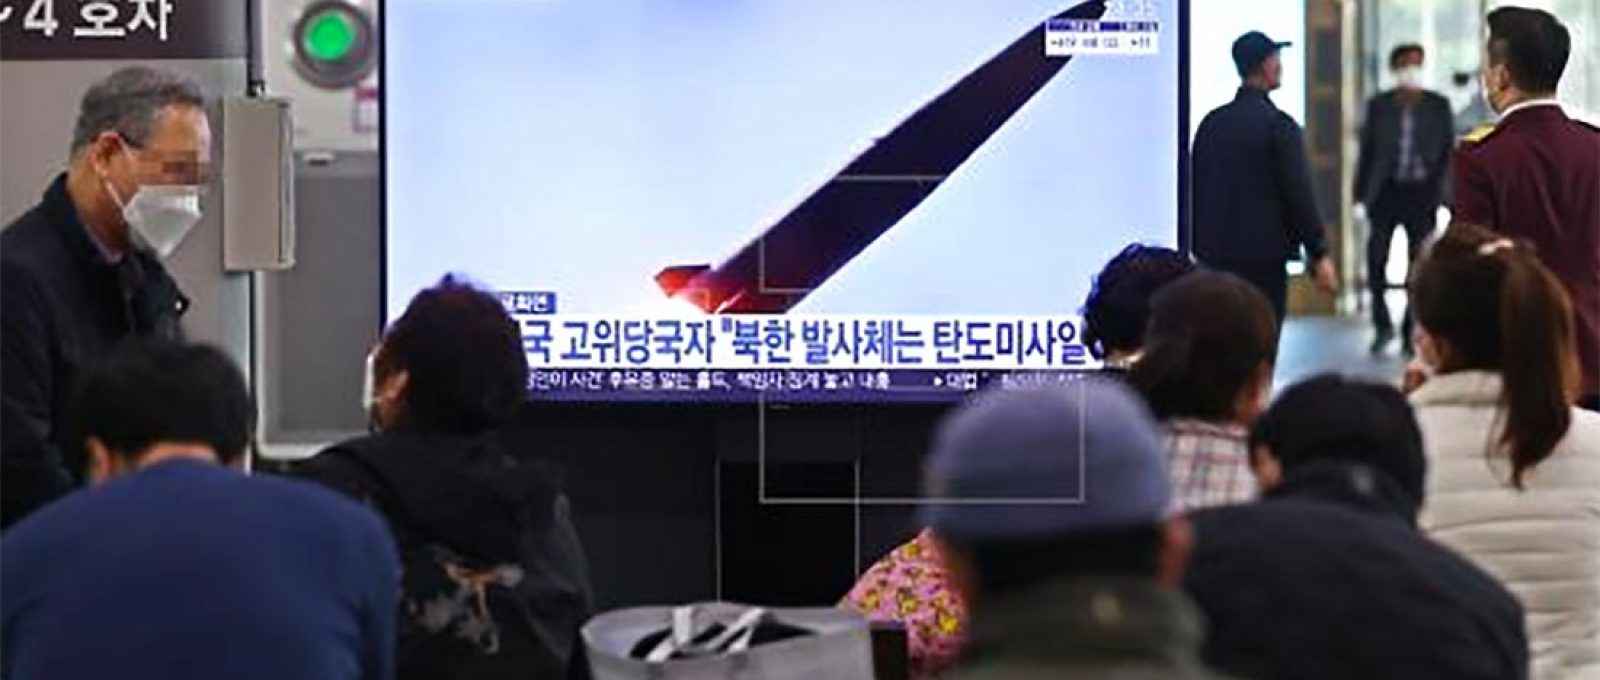 Cidadãos assistem às notícias sobre o disparo de mísseis da Coreia do Norte na Estação Suseo em Seul, Coreia do Sul, 25 de março de 2021. (Foto: EPA-EFE/Yonhap).